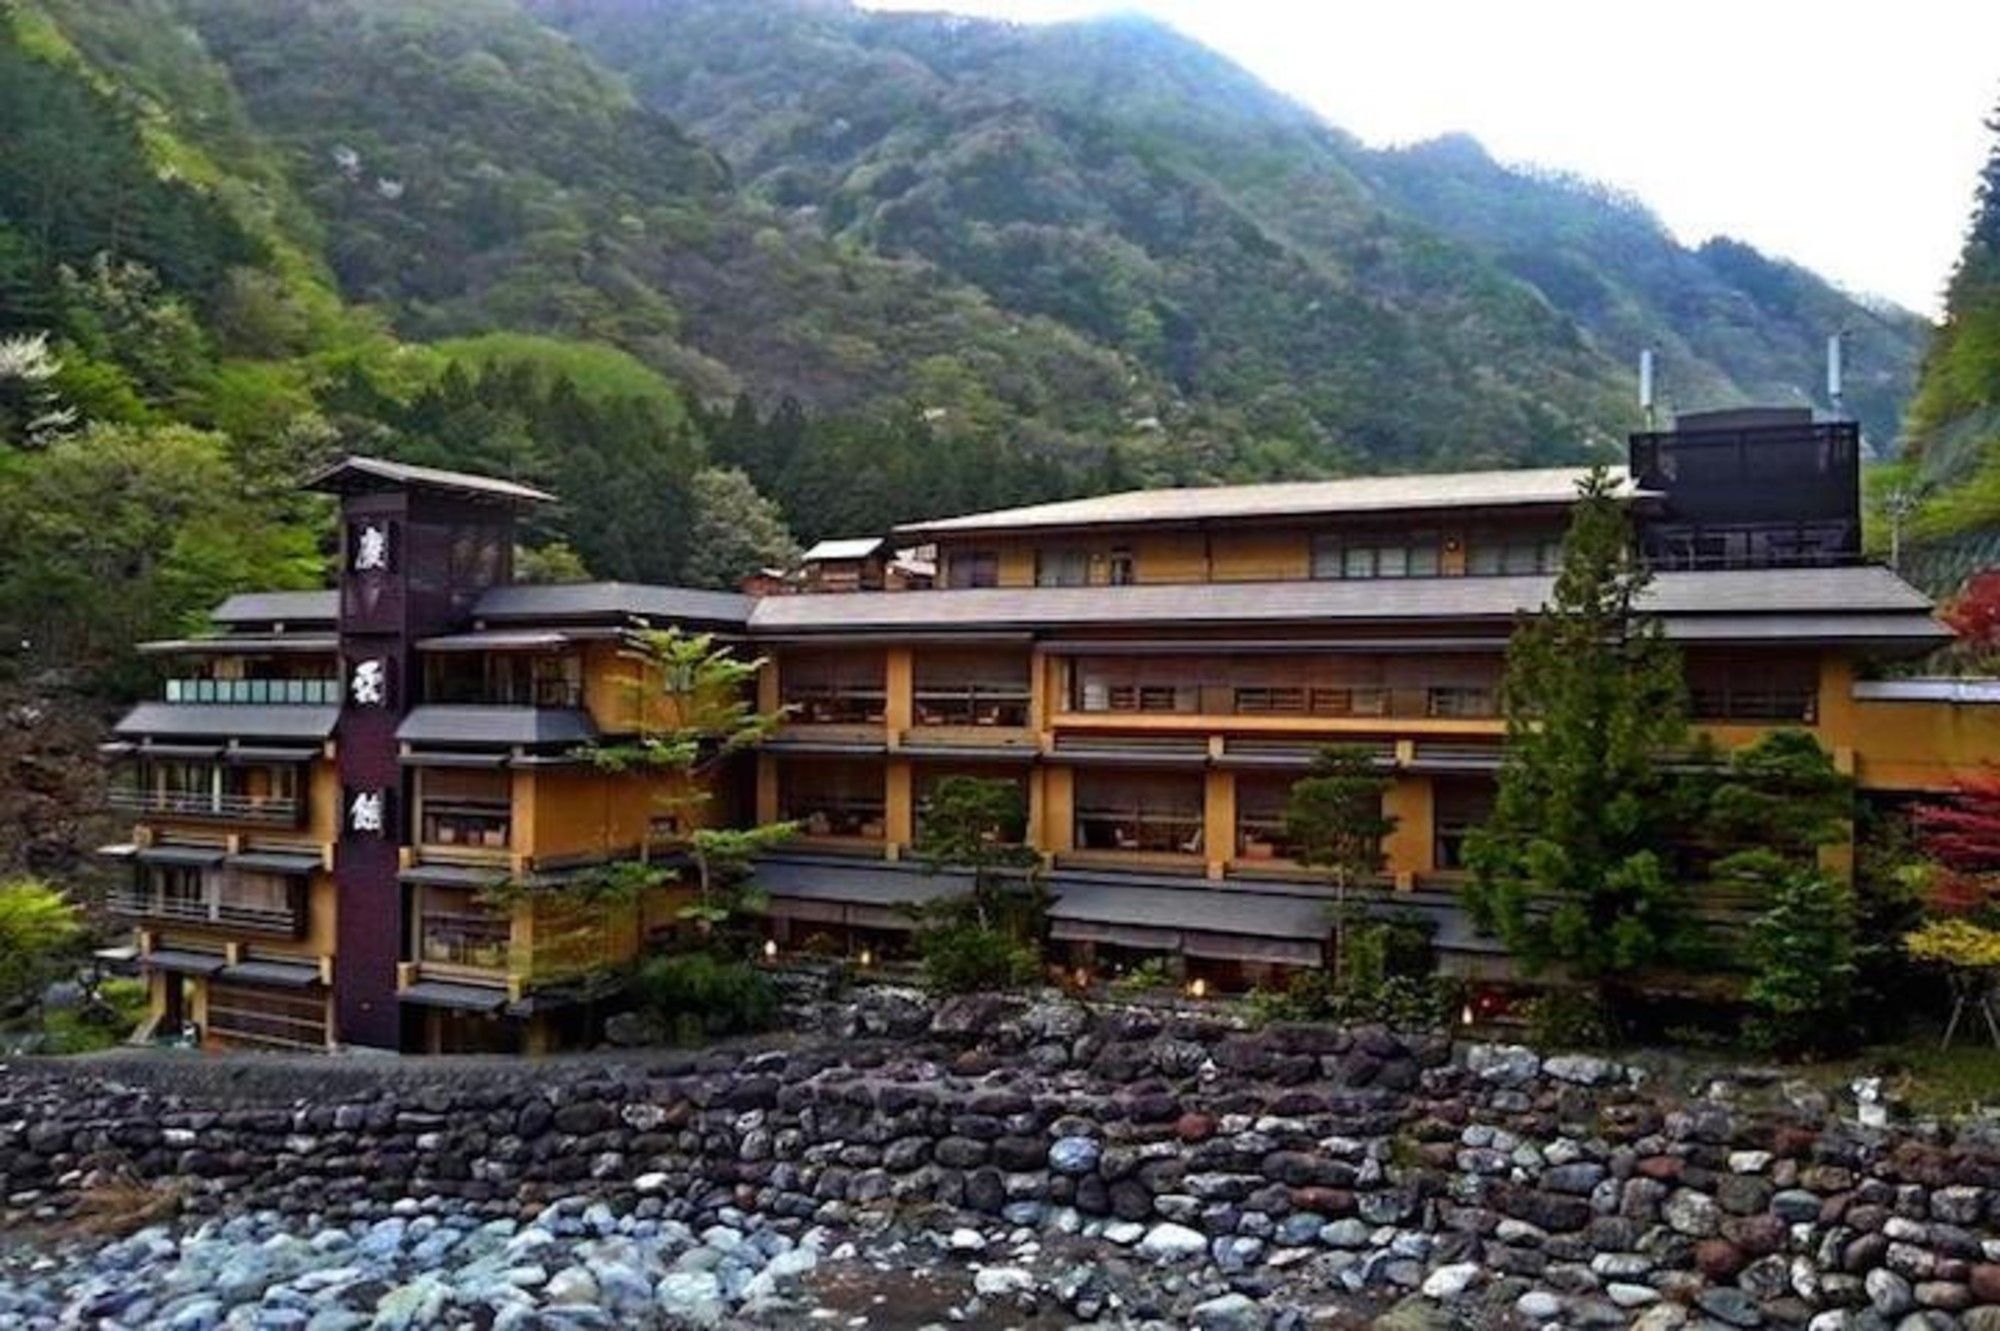 In vacanza nell’albergo più antico del mondo? Più di 1300 anni ben portati